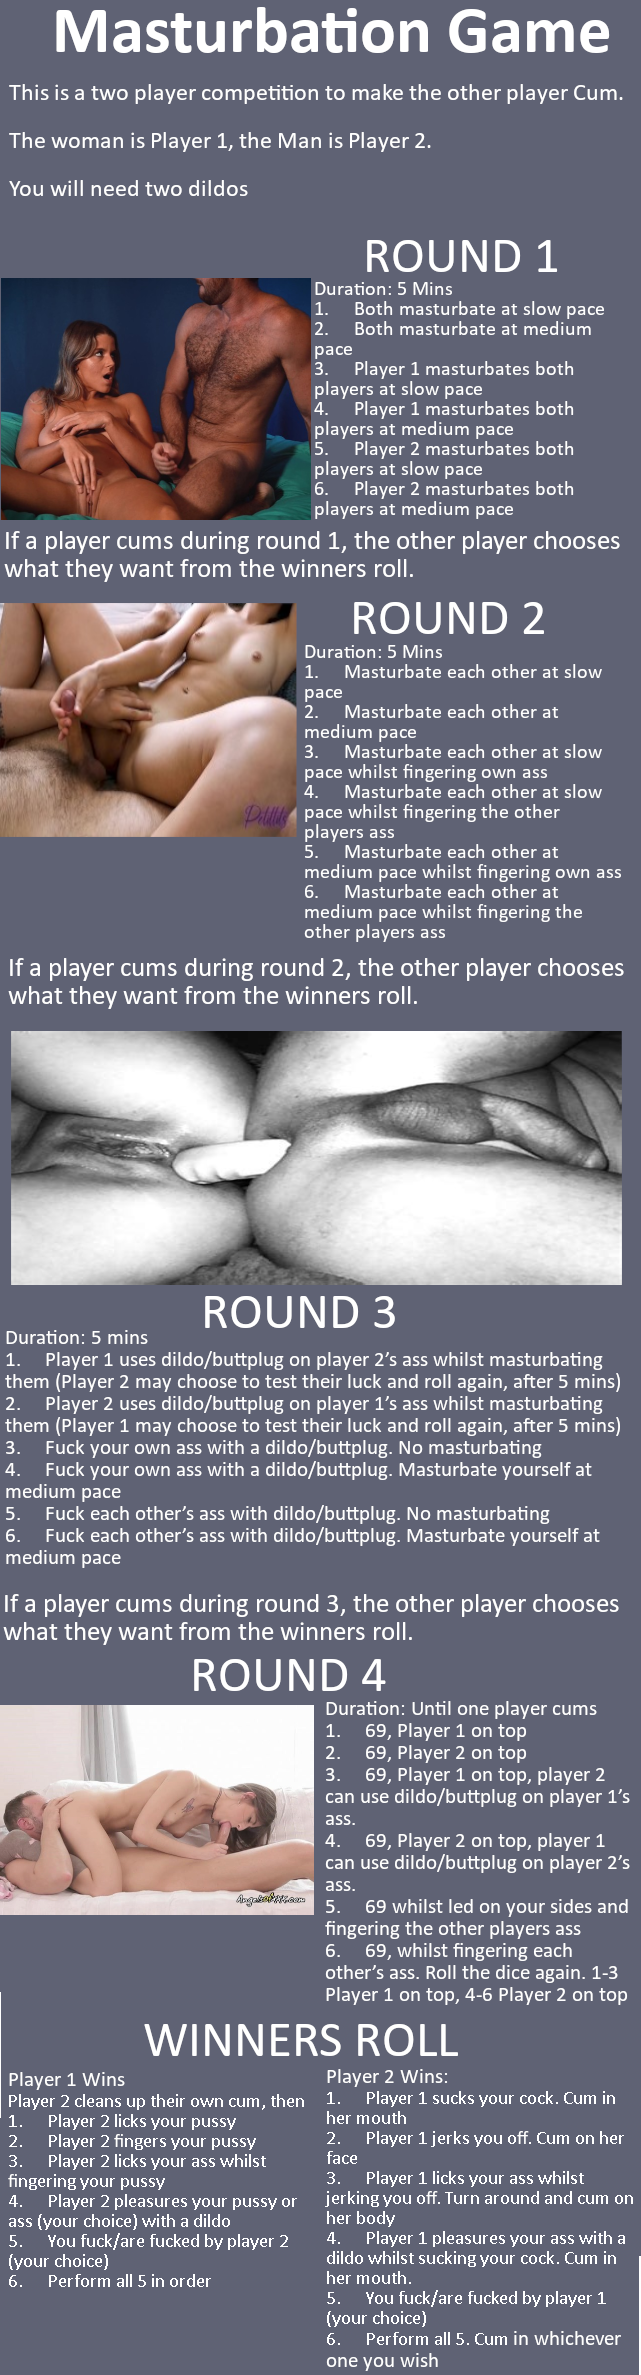 Masturbation game